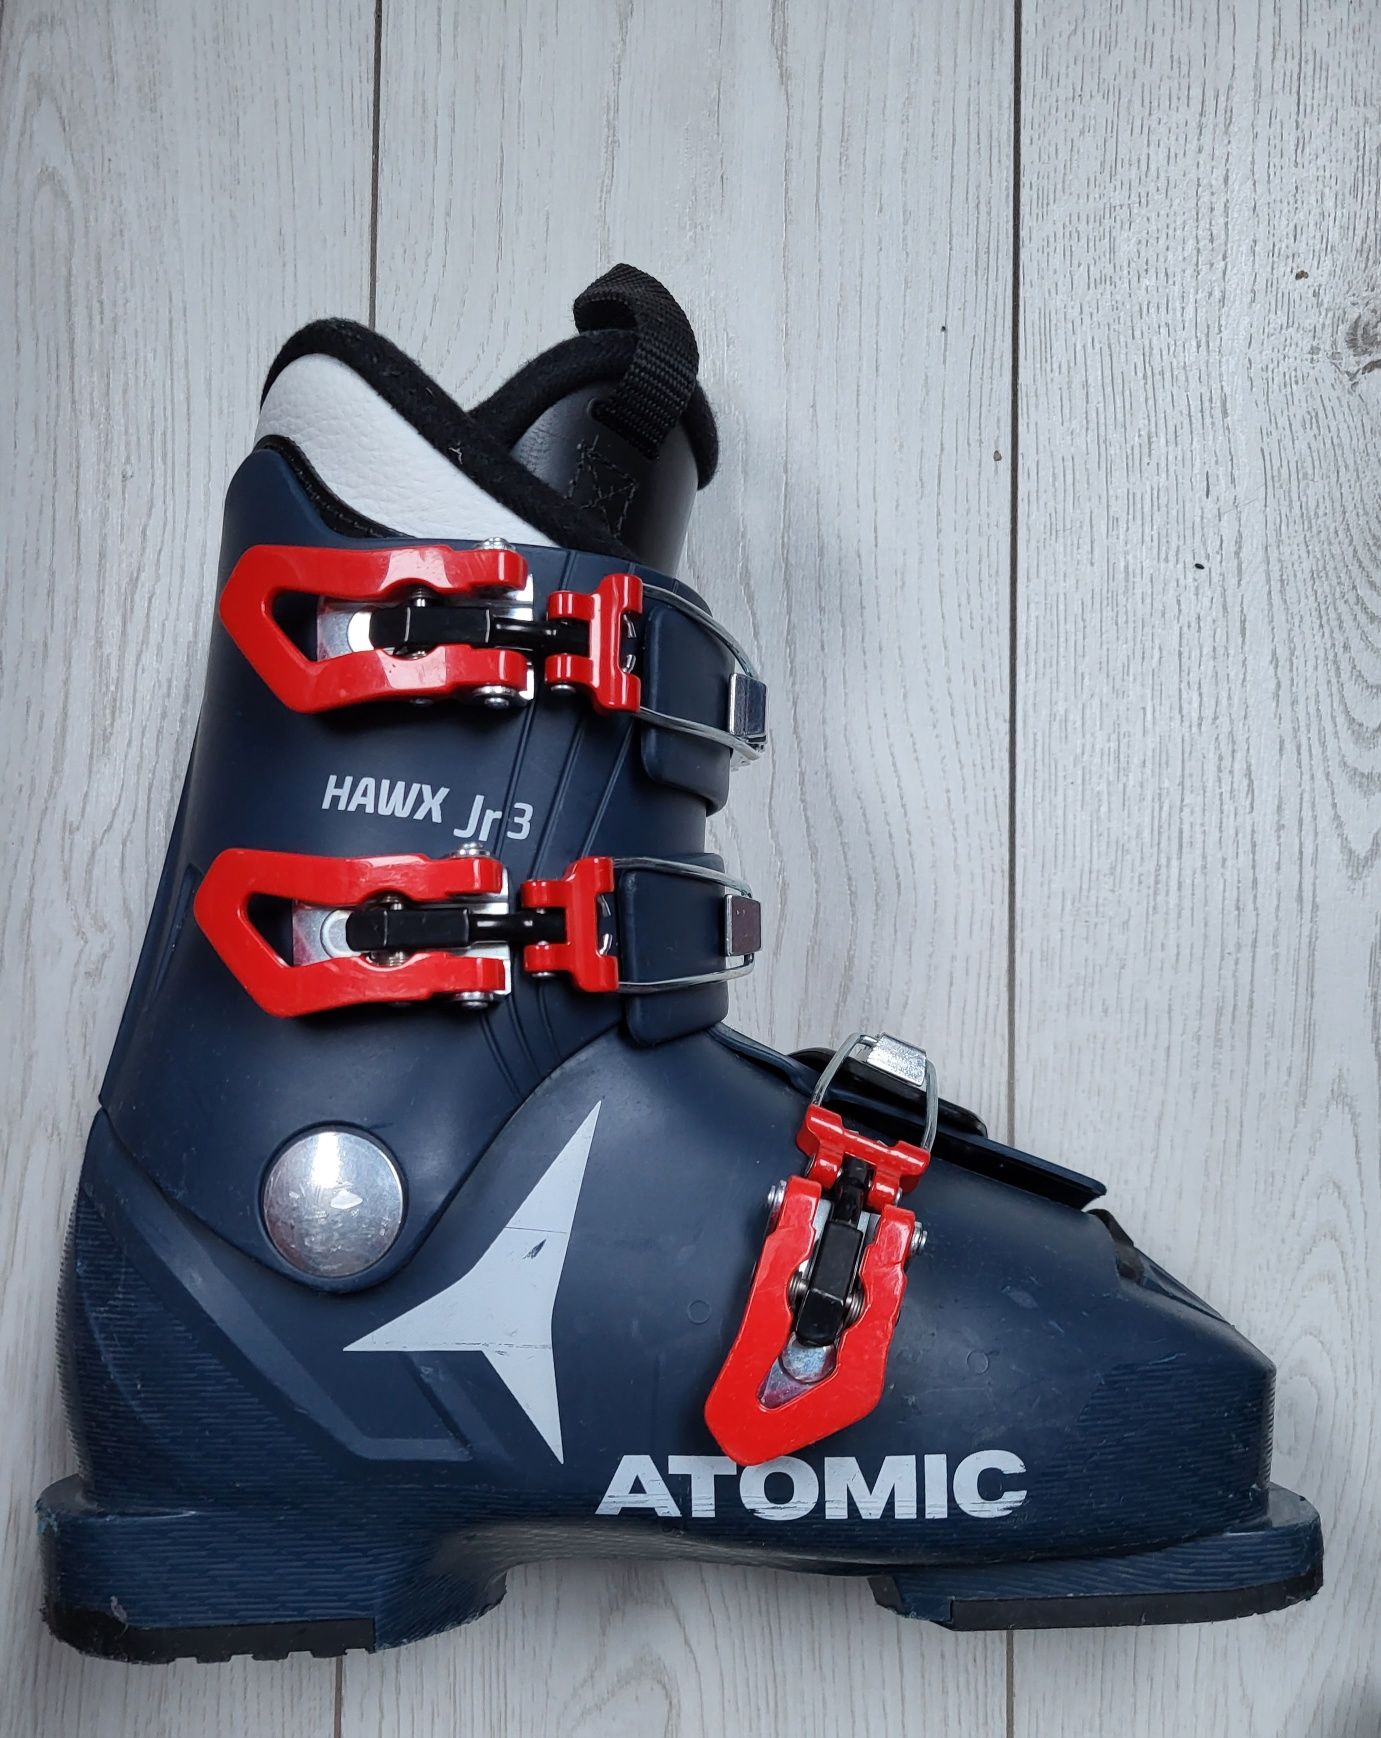 Dziecięce buty narciarskie ATOMIC HAWX JR3 rozm. 33/34 MP 21-21.5 
HAW